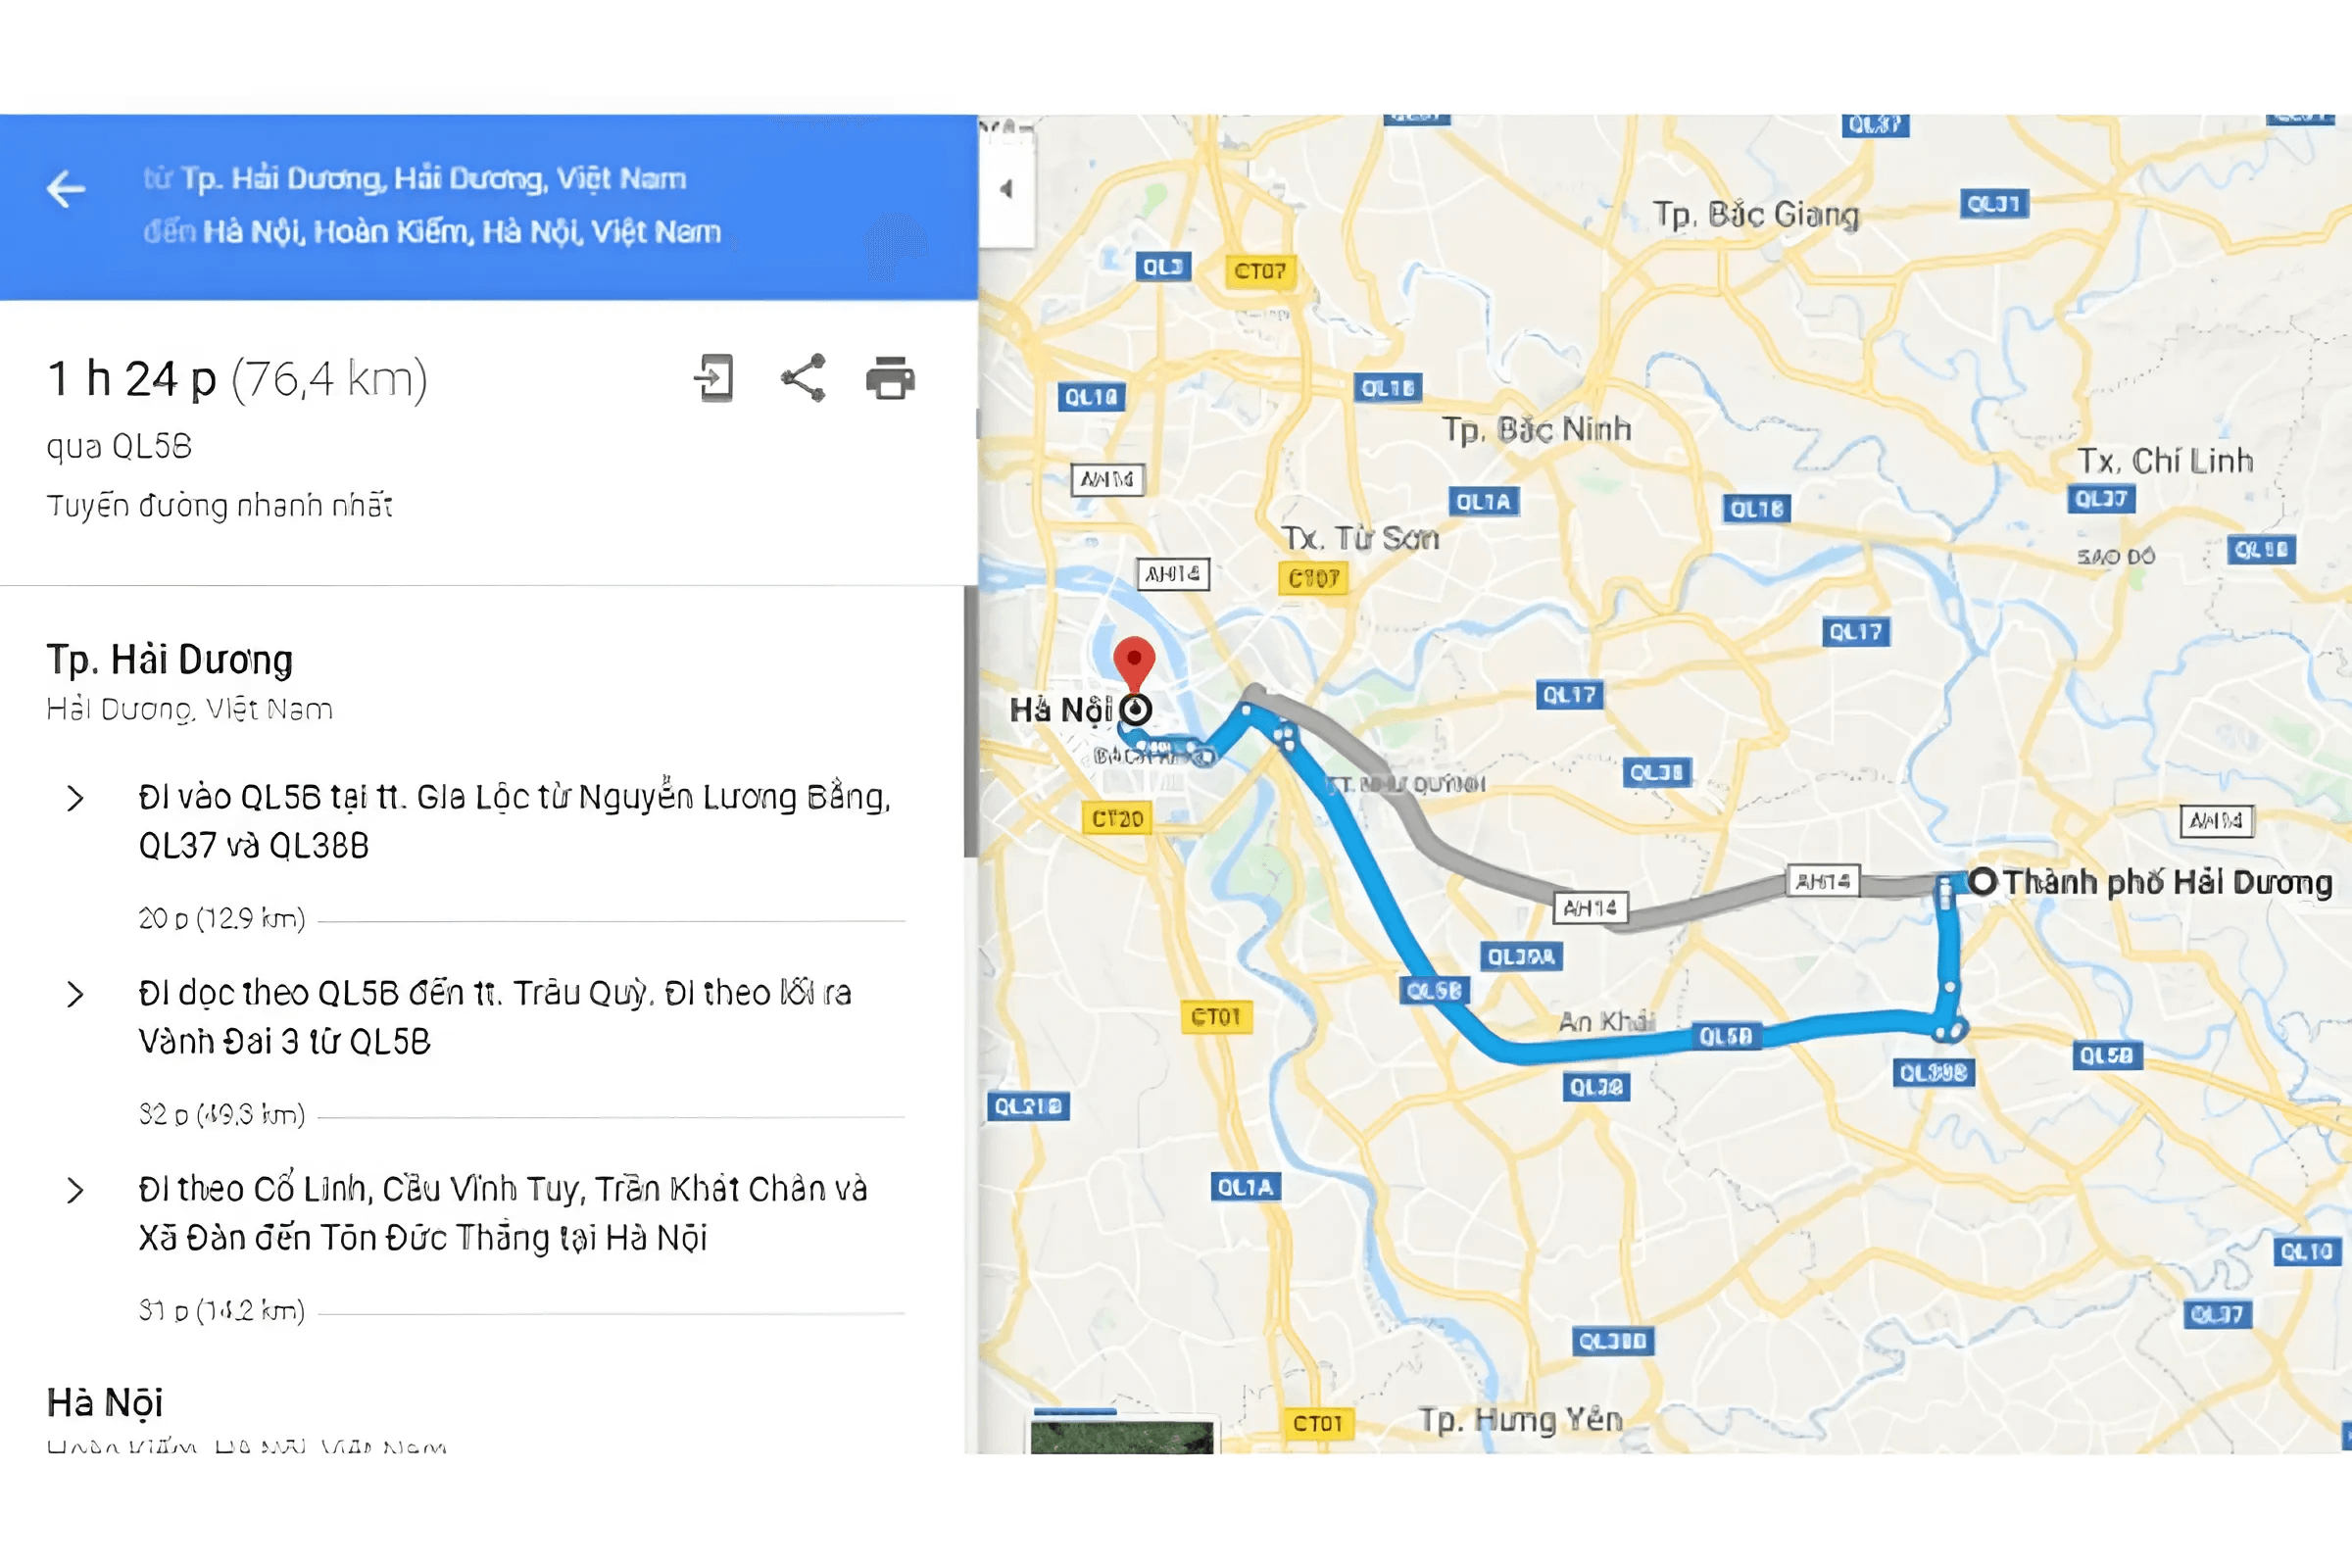 Tuyến đường 2 đi từ Hải Dương đến Hà Nội có khoảng cách là 76,4km, đây cũng là tuyến đường nhanh nhất 